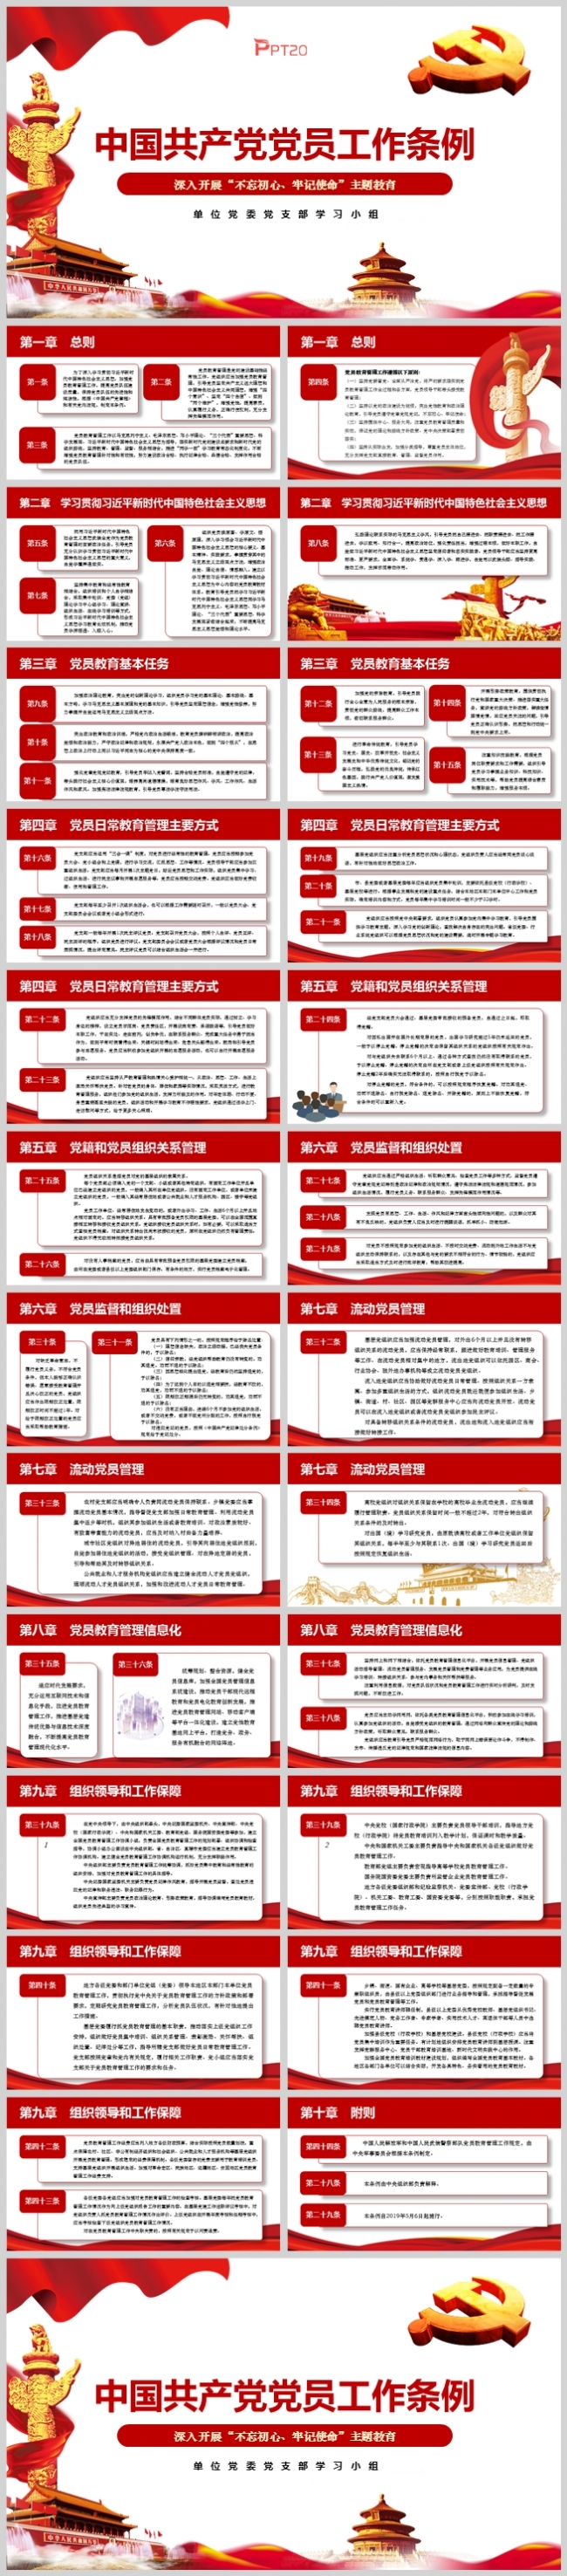 基层党支部《中国共产党党员工作条例》学习PPT模板